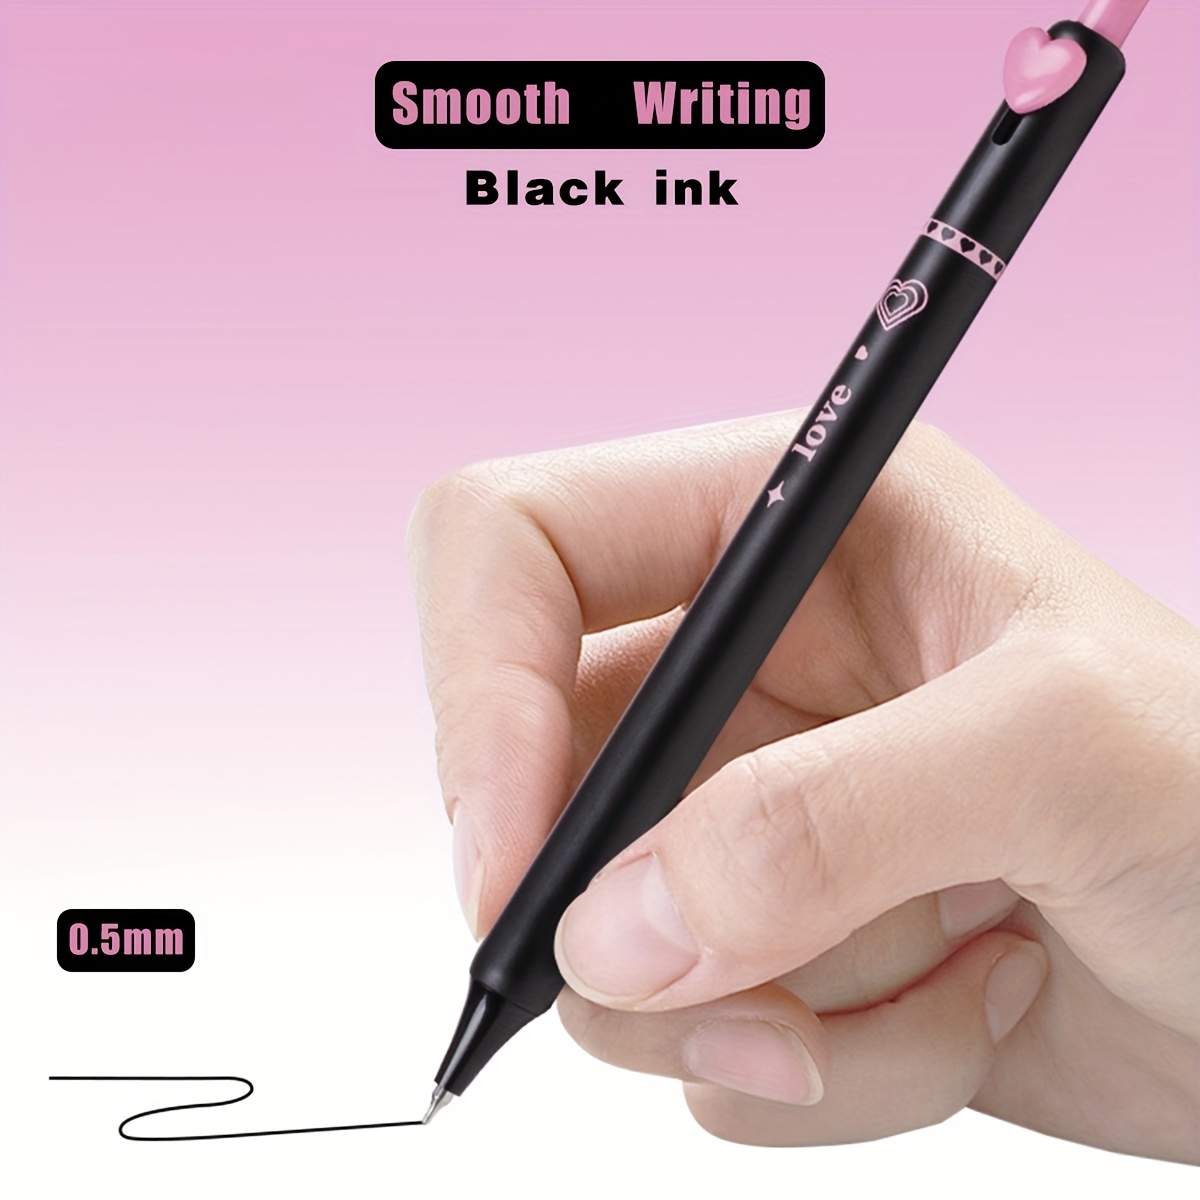  Eyomii 12 unids/set bolígrafo borrable azul/tinta negra 0.020  in gel pluma aguja suministros escolares. : Productos de Oficina